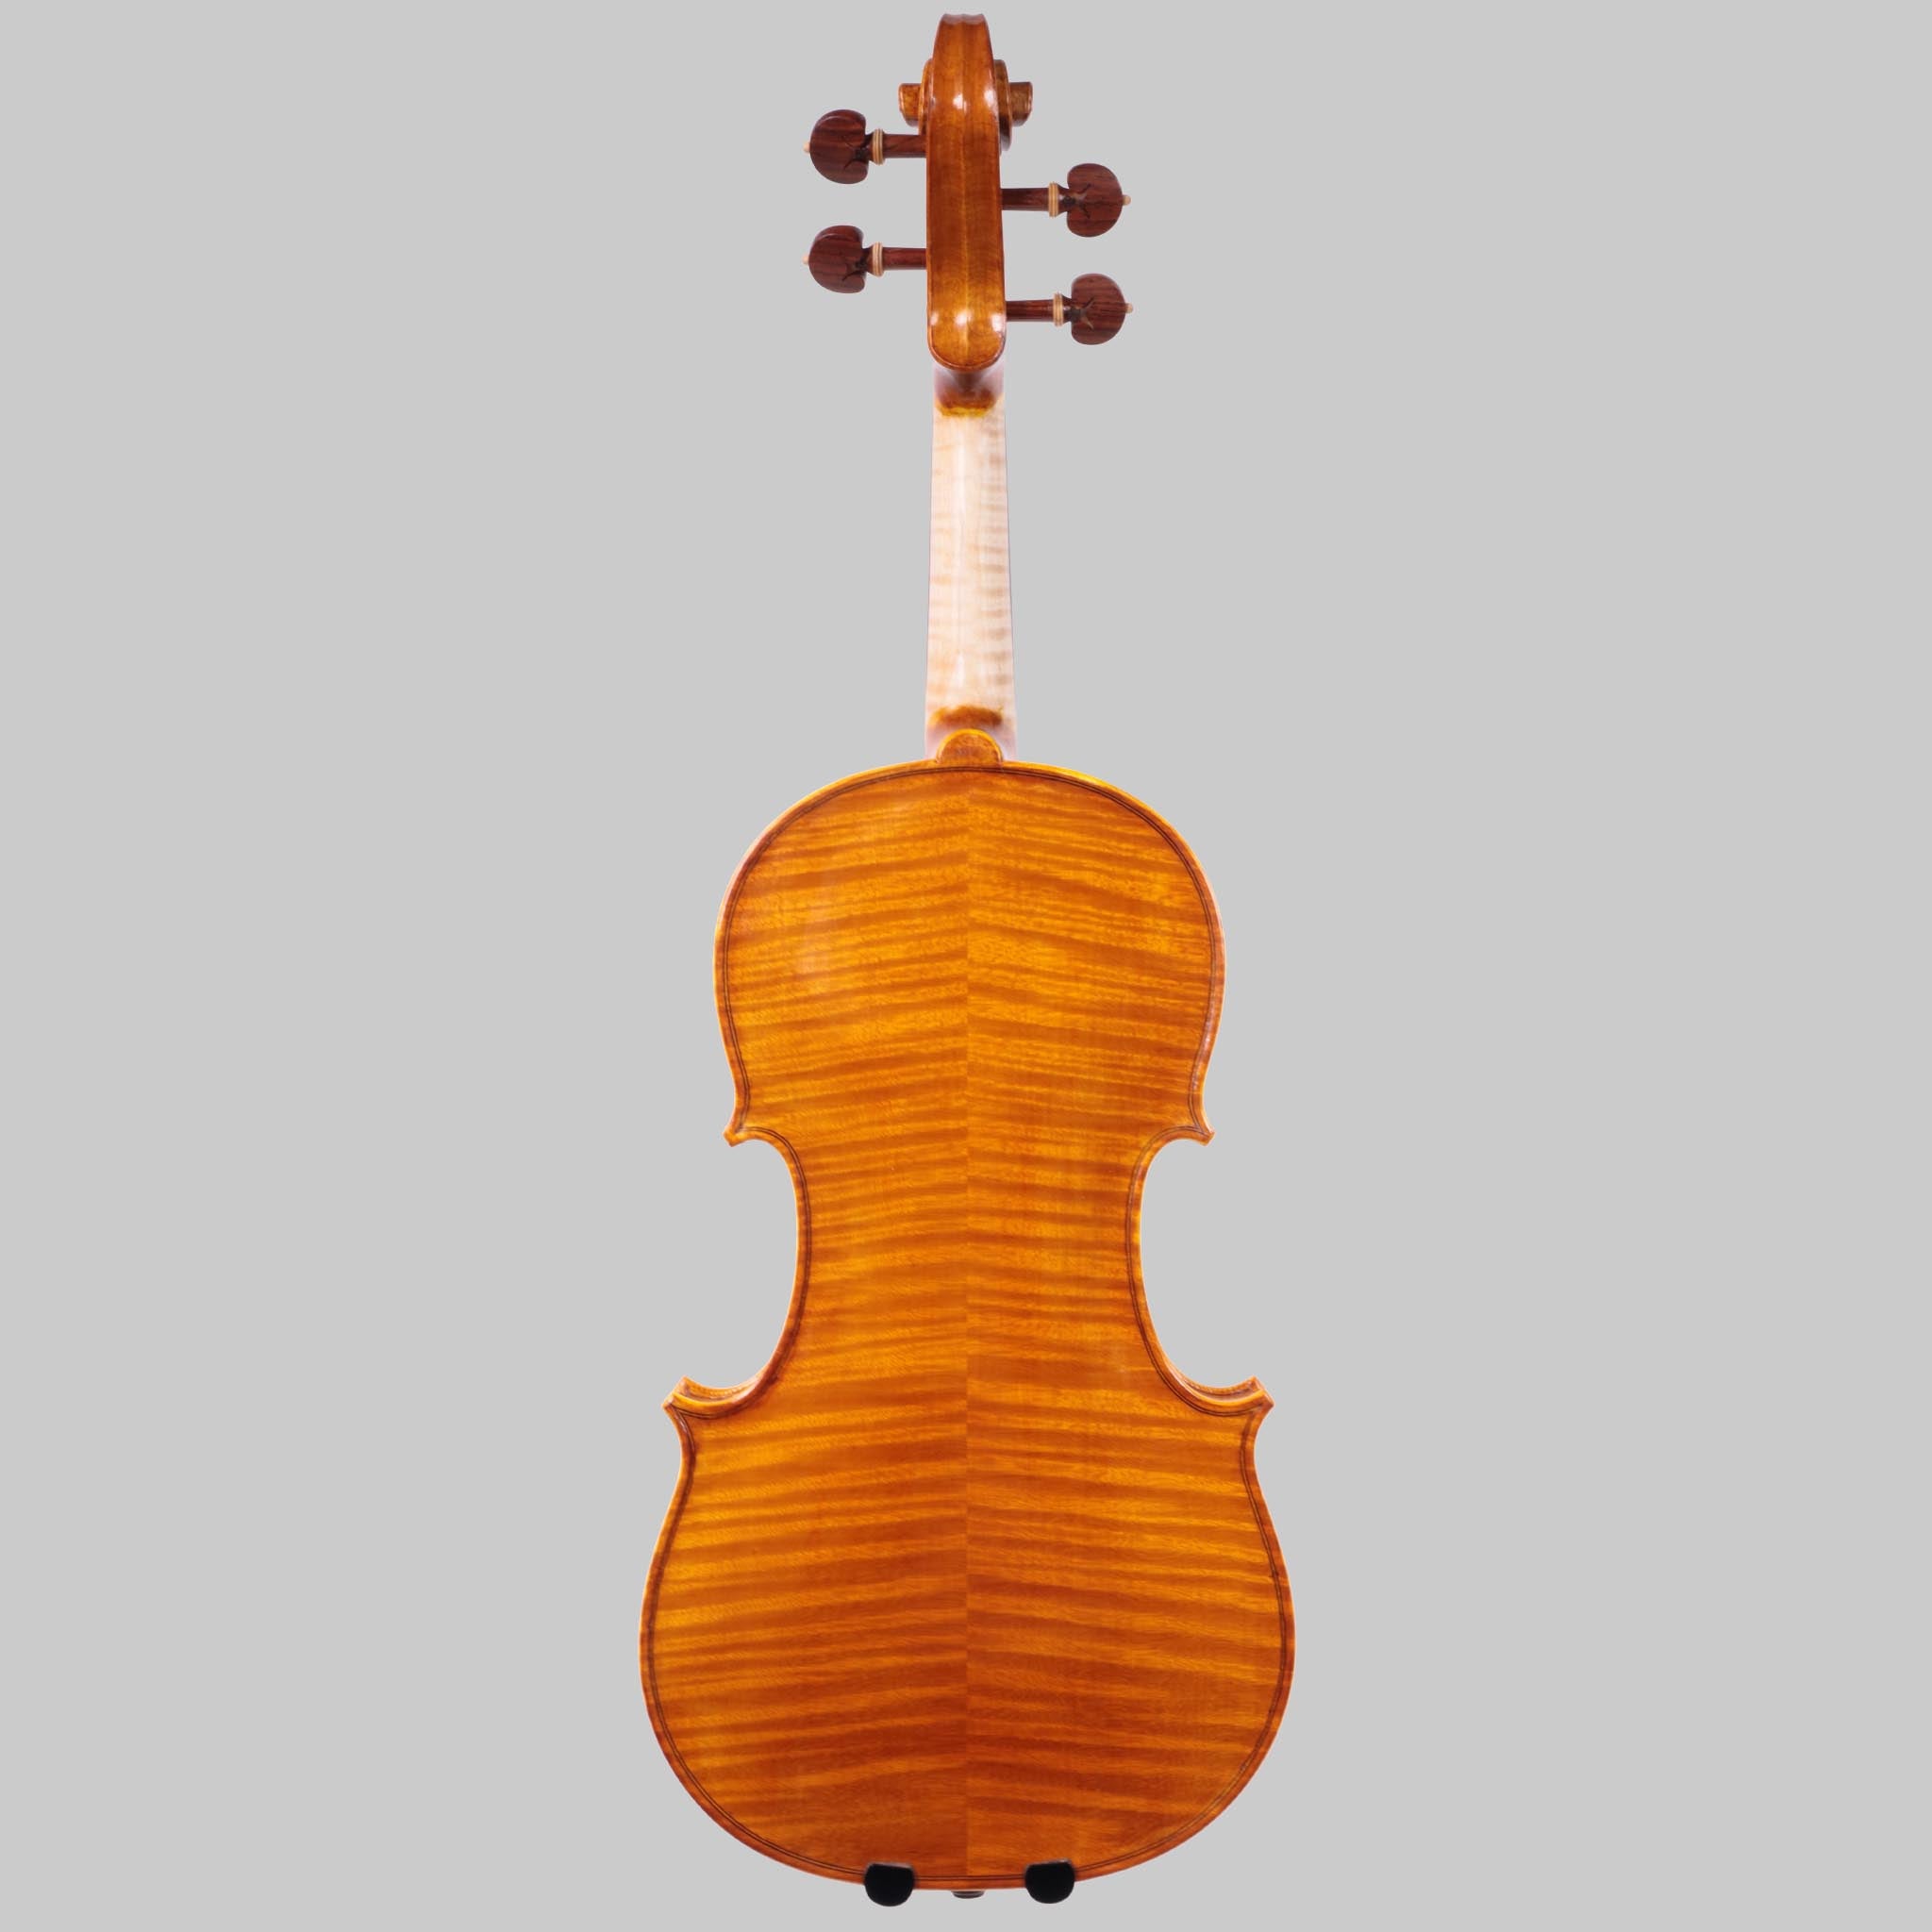 Luca Zerilli 2020 Violin, Udine Italy No. 30